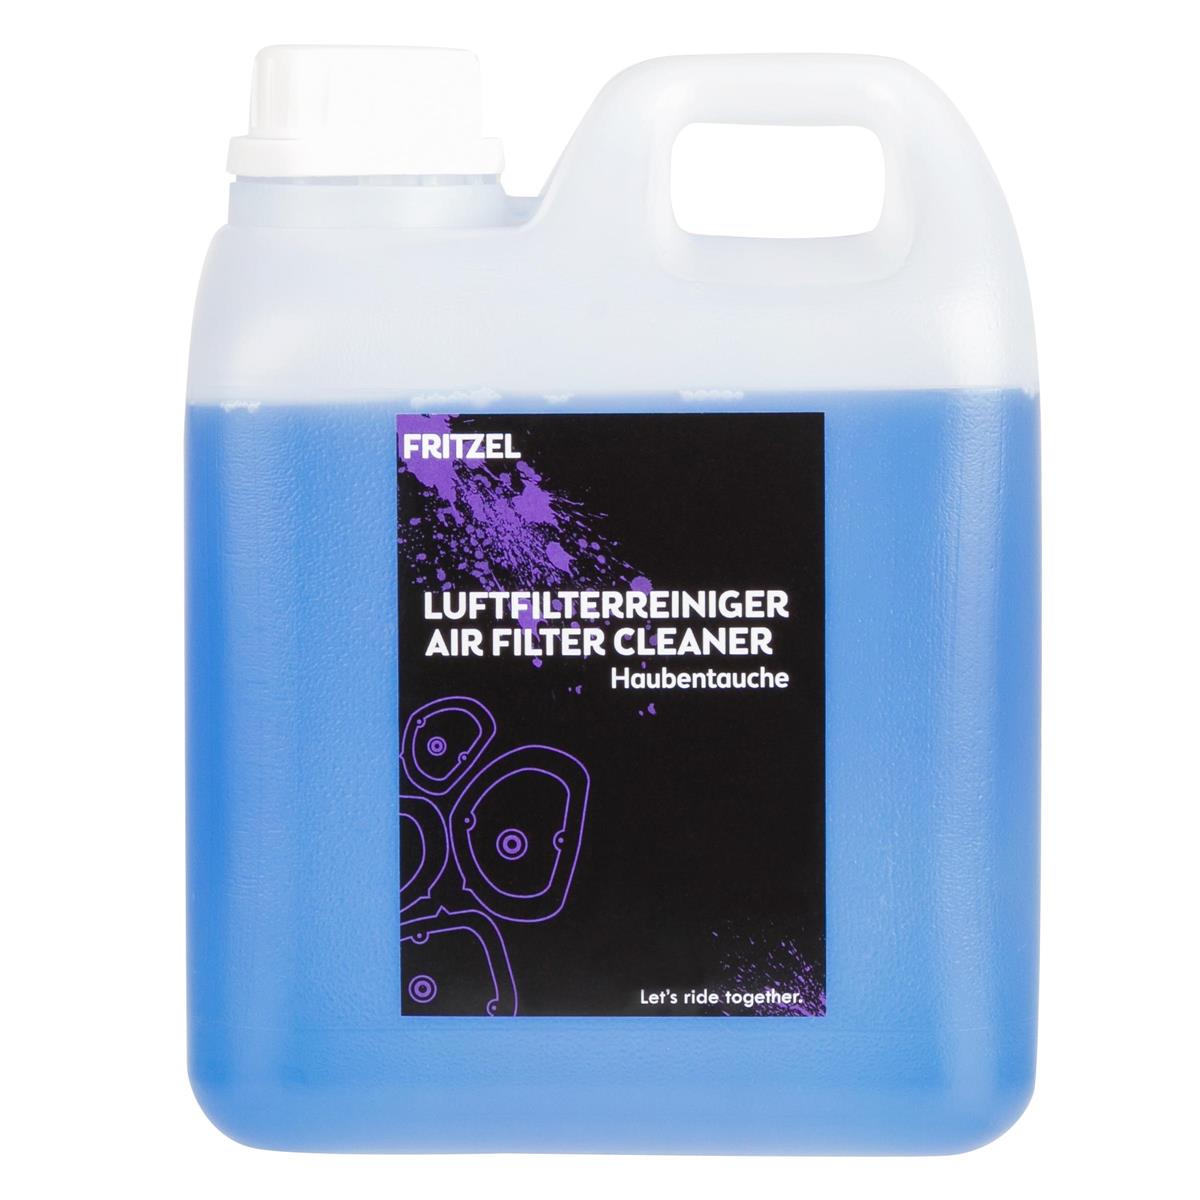 FRITZEL Air Filter Cleaner Haubentauche 2 Liter